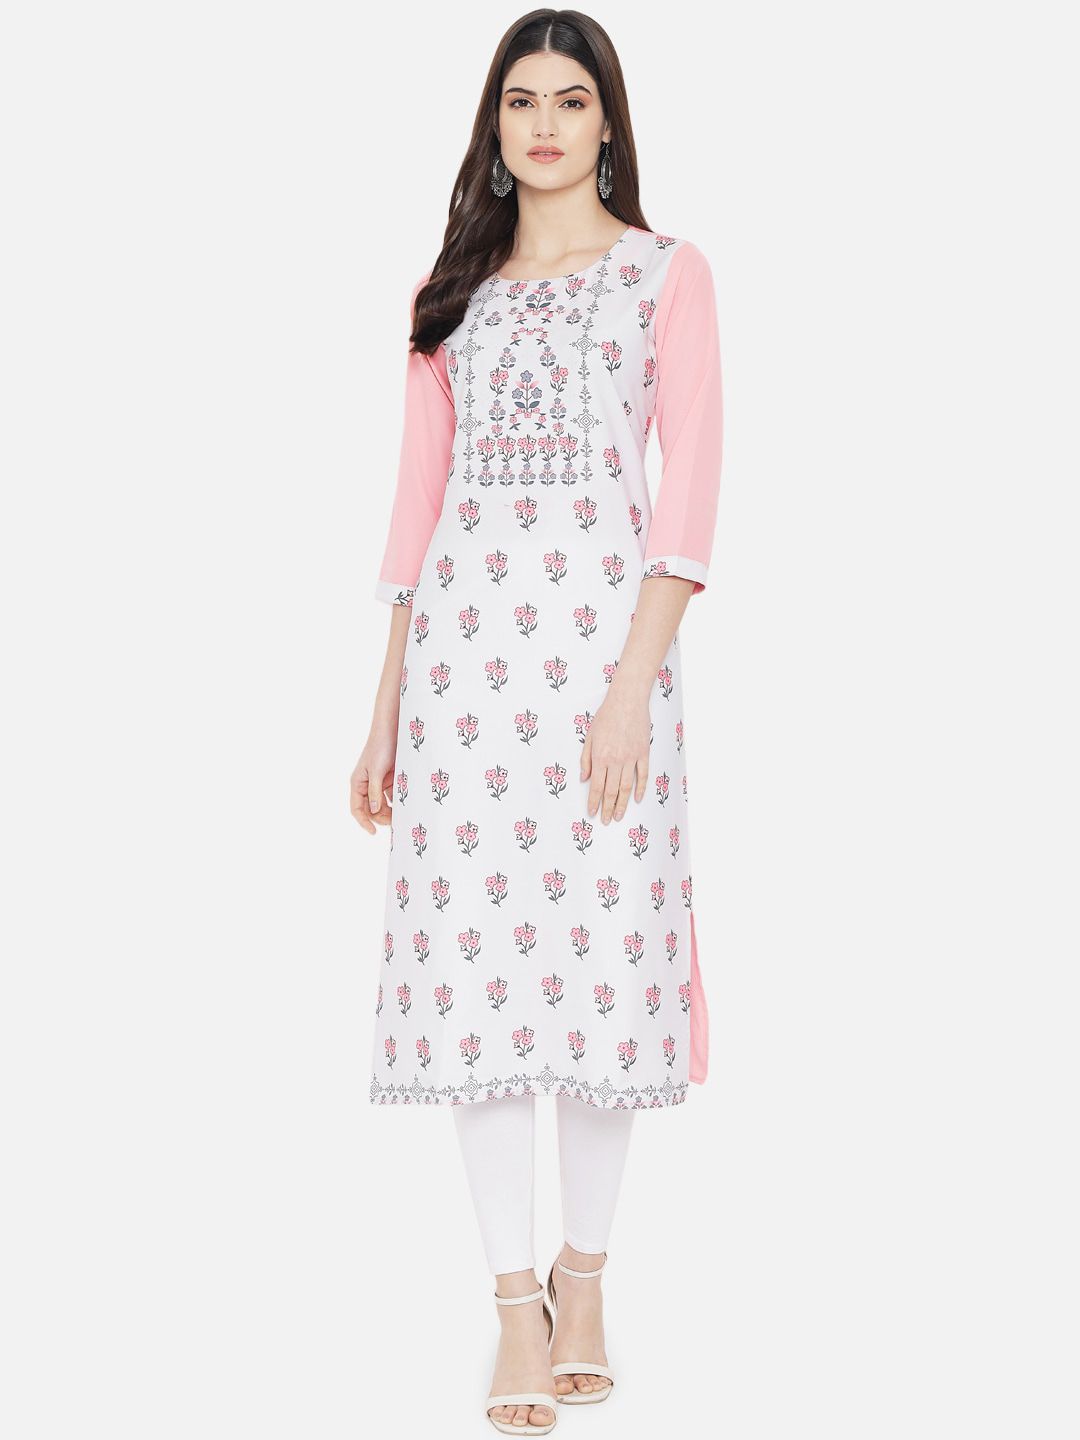 KALINI Women Off White & Pink Floral Printed Crepe Kurta Price in India